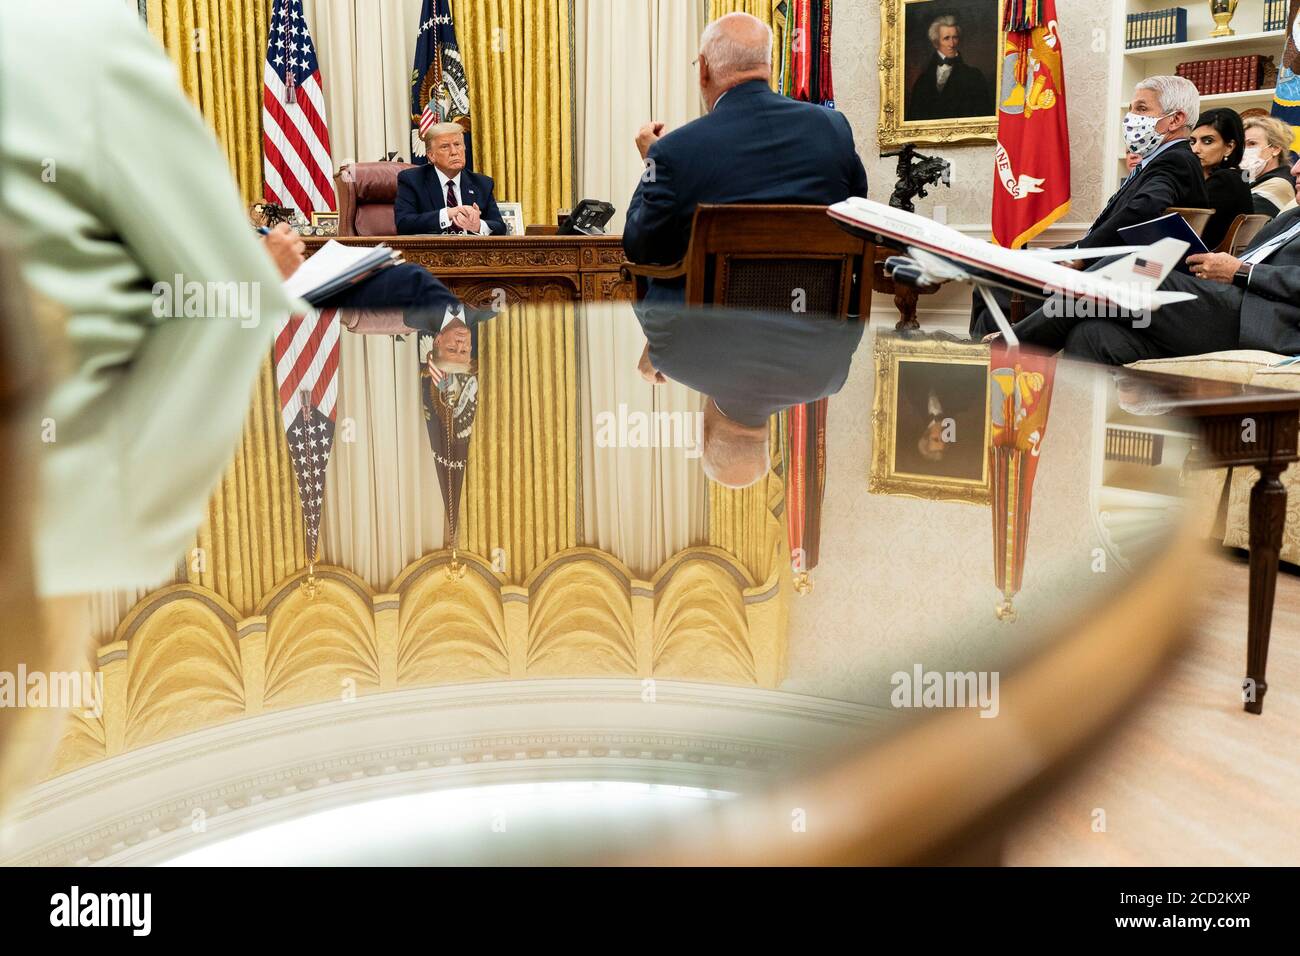 Präsident Donald J. Trump, zusammen mit Vizepräsident Mike Pence und Mitgliedern der Coronavirus Task Force des Weißen Hauses, nimmt an einer Coronavirus Update Briefing Montag, 4. August 2020, im Oval Office Room des Weißen Hauses Teil. Stockfoto